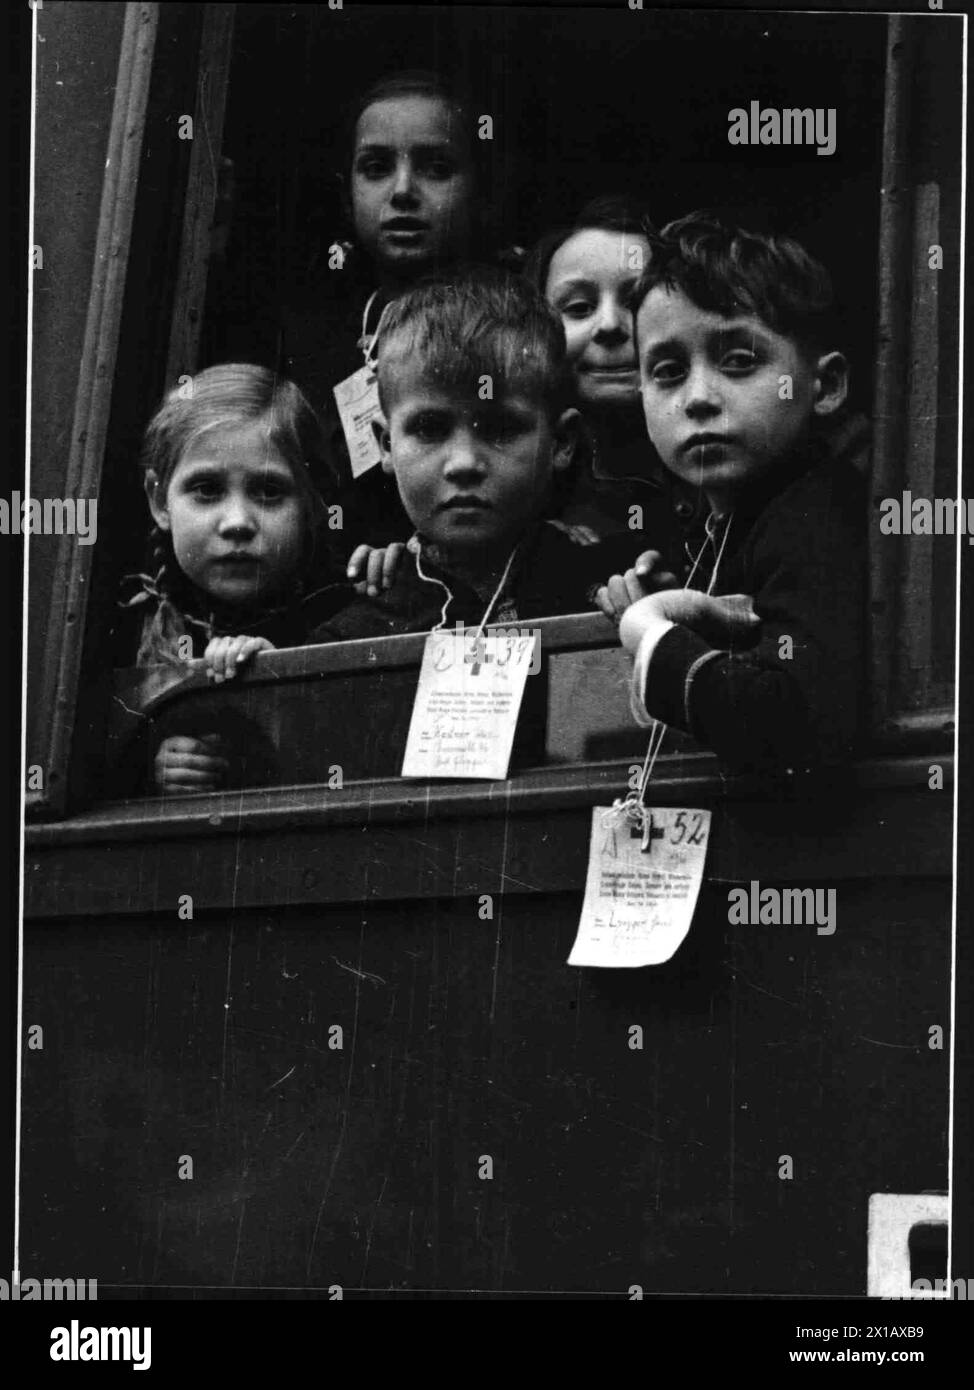 Les enfants autrichiens voyagent en Suisse, action de secours la Croix rouge suisse pour les enfants après la 2ème guerre mondiale, 4.3.1946 - 19460304 PD0005 - Rechteinfo : Rights Managed (RM) Banque D'Images